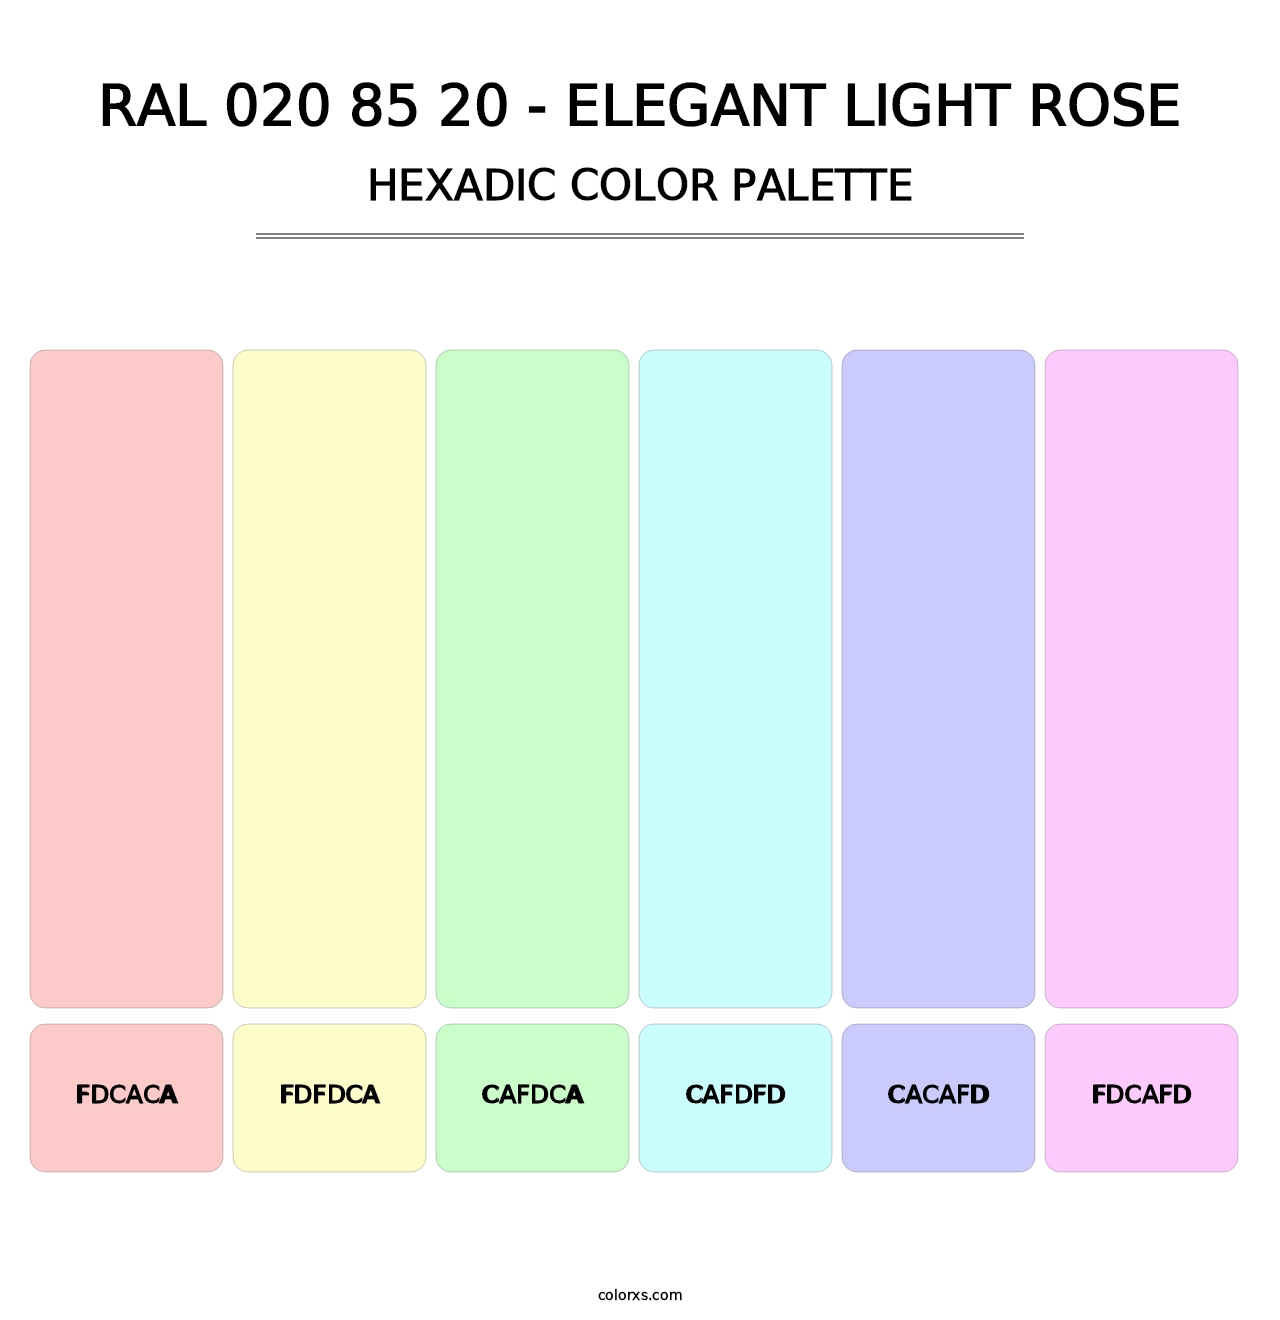 RAL 020 85 20 - Elegant Light Rose - Hexadic Color Palette